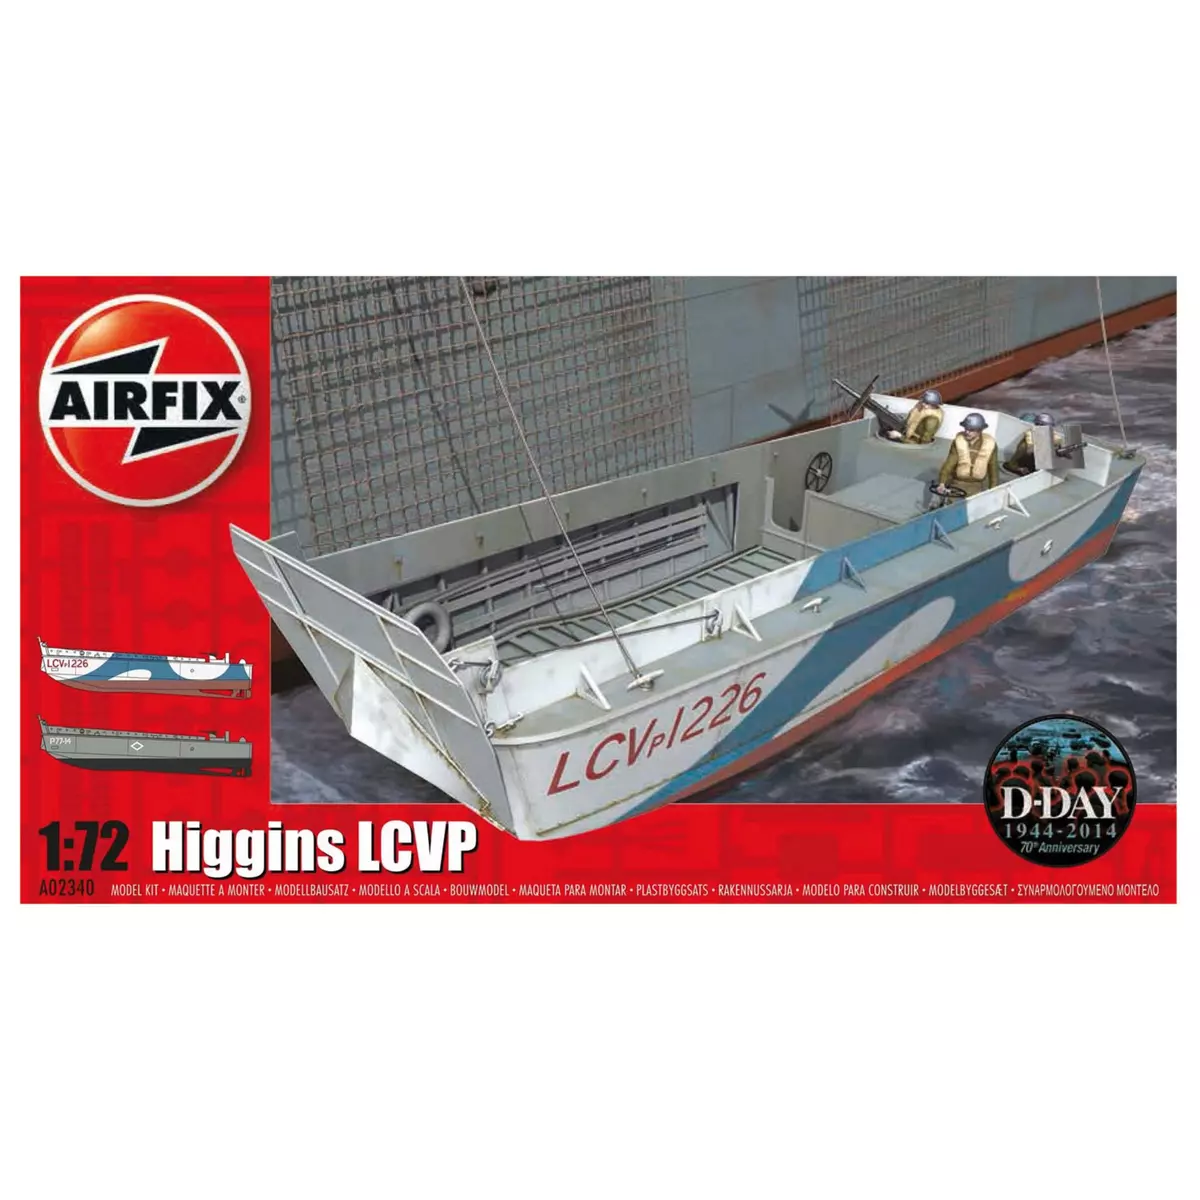 Airfix Maquette bateau : Higgins LCVP : 1:72